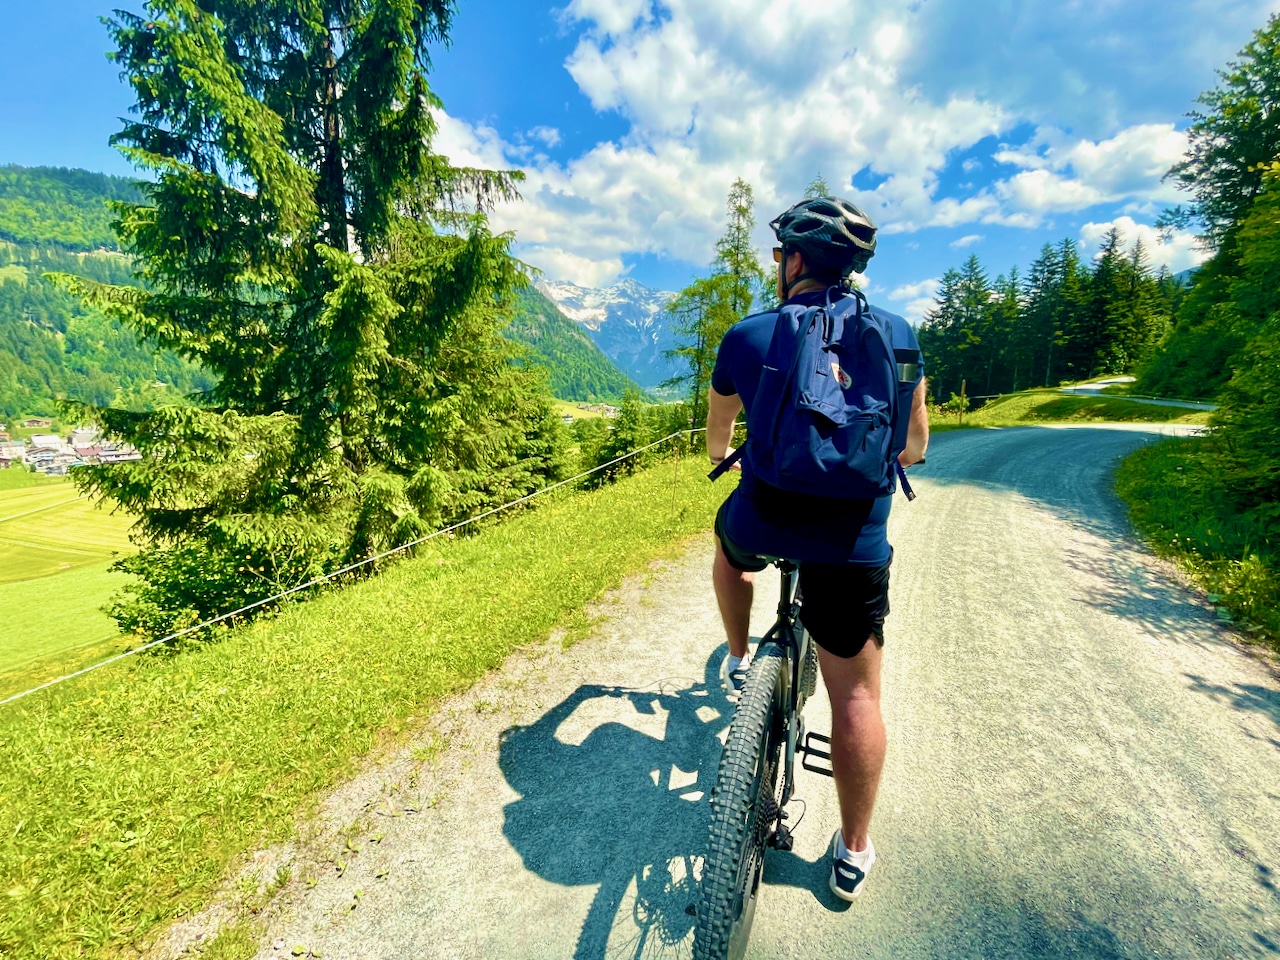 Beste Reisezeit für Österreich – ja, wann denn? Zum Wandern und Biken im Sommer, zum Ski fahren im Winter. Ist doch logisch, oder?